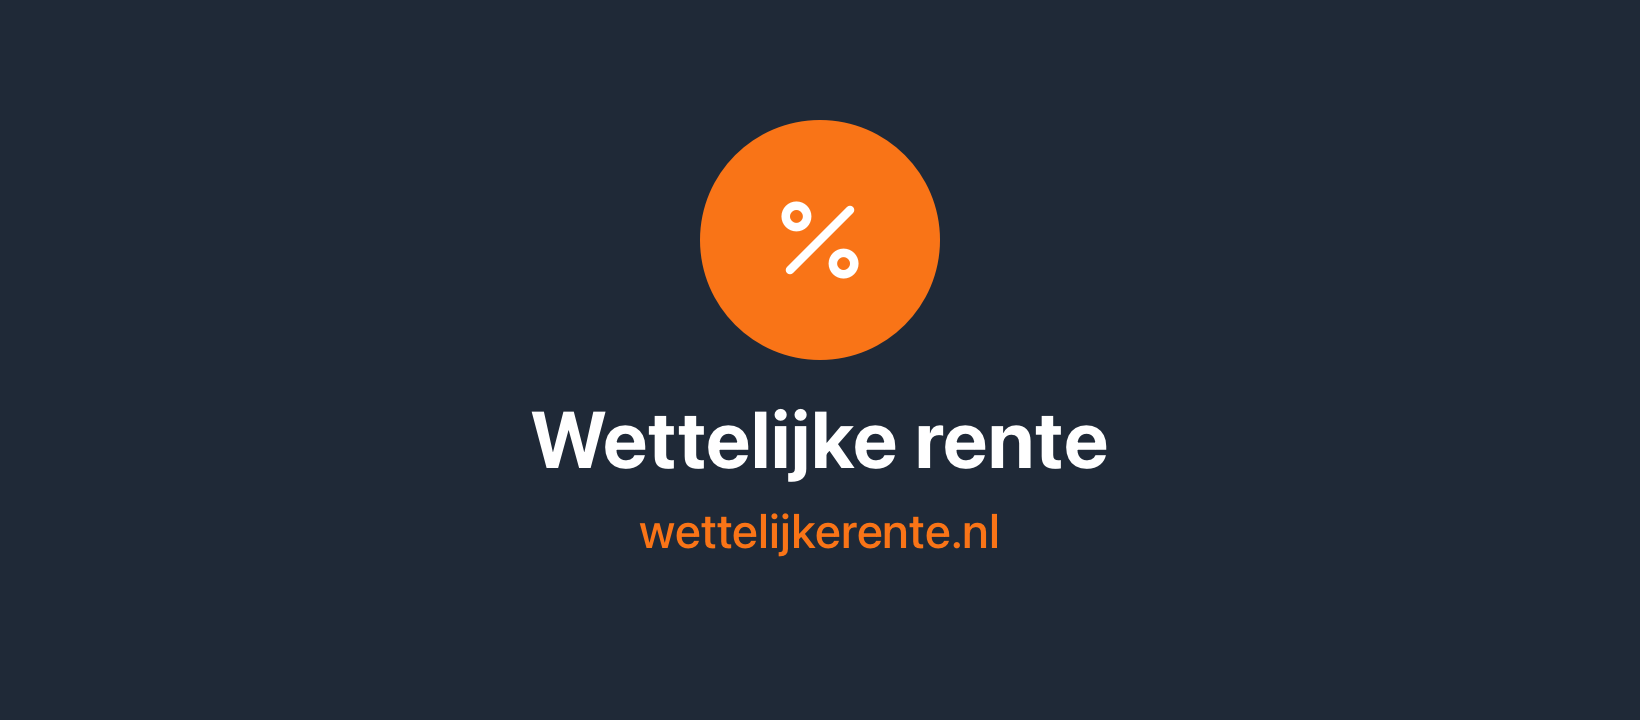 (c) Wettelijkerente.nl